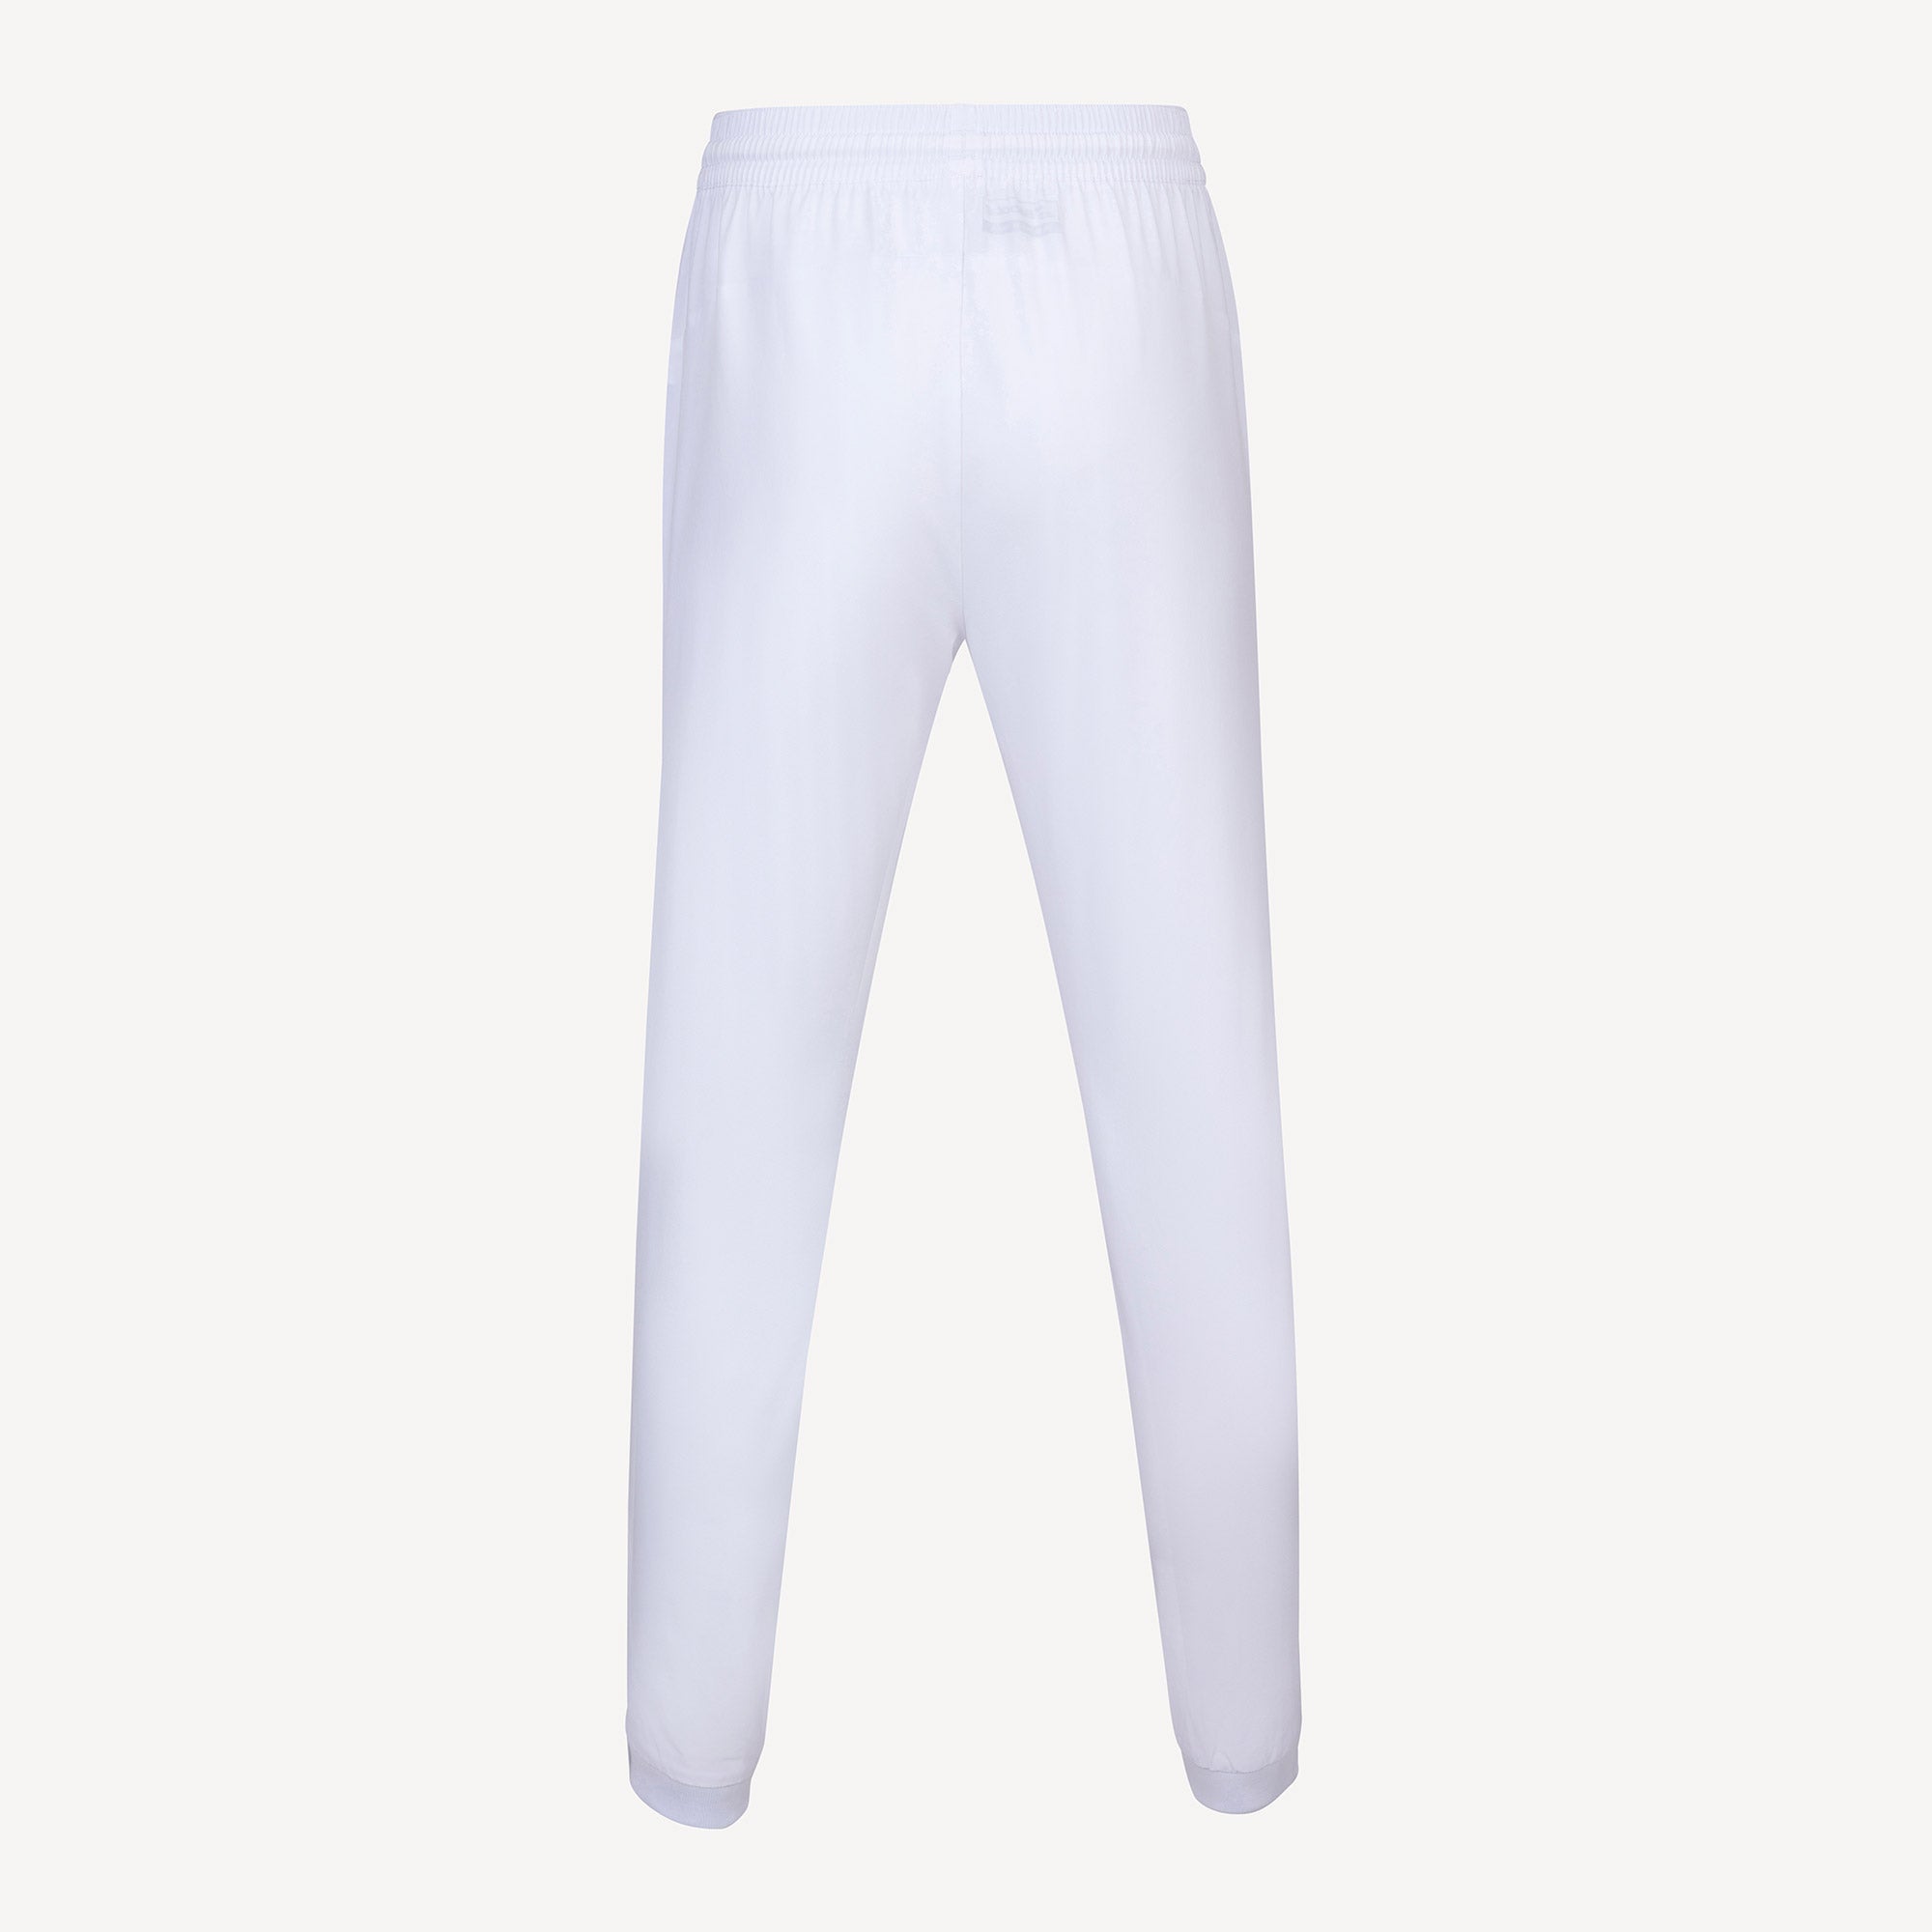 Babolat Play Club Women's Tennis Pants White (2)